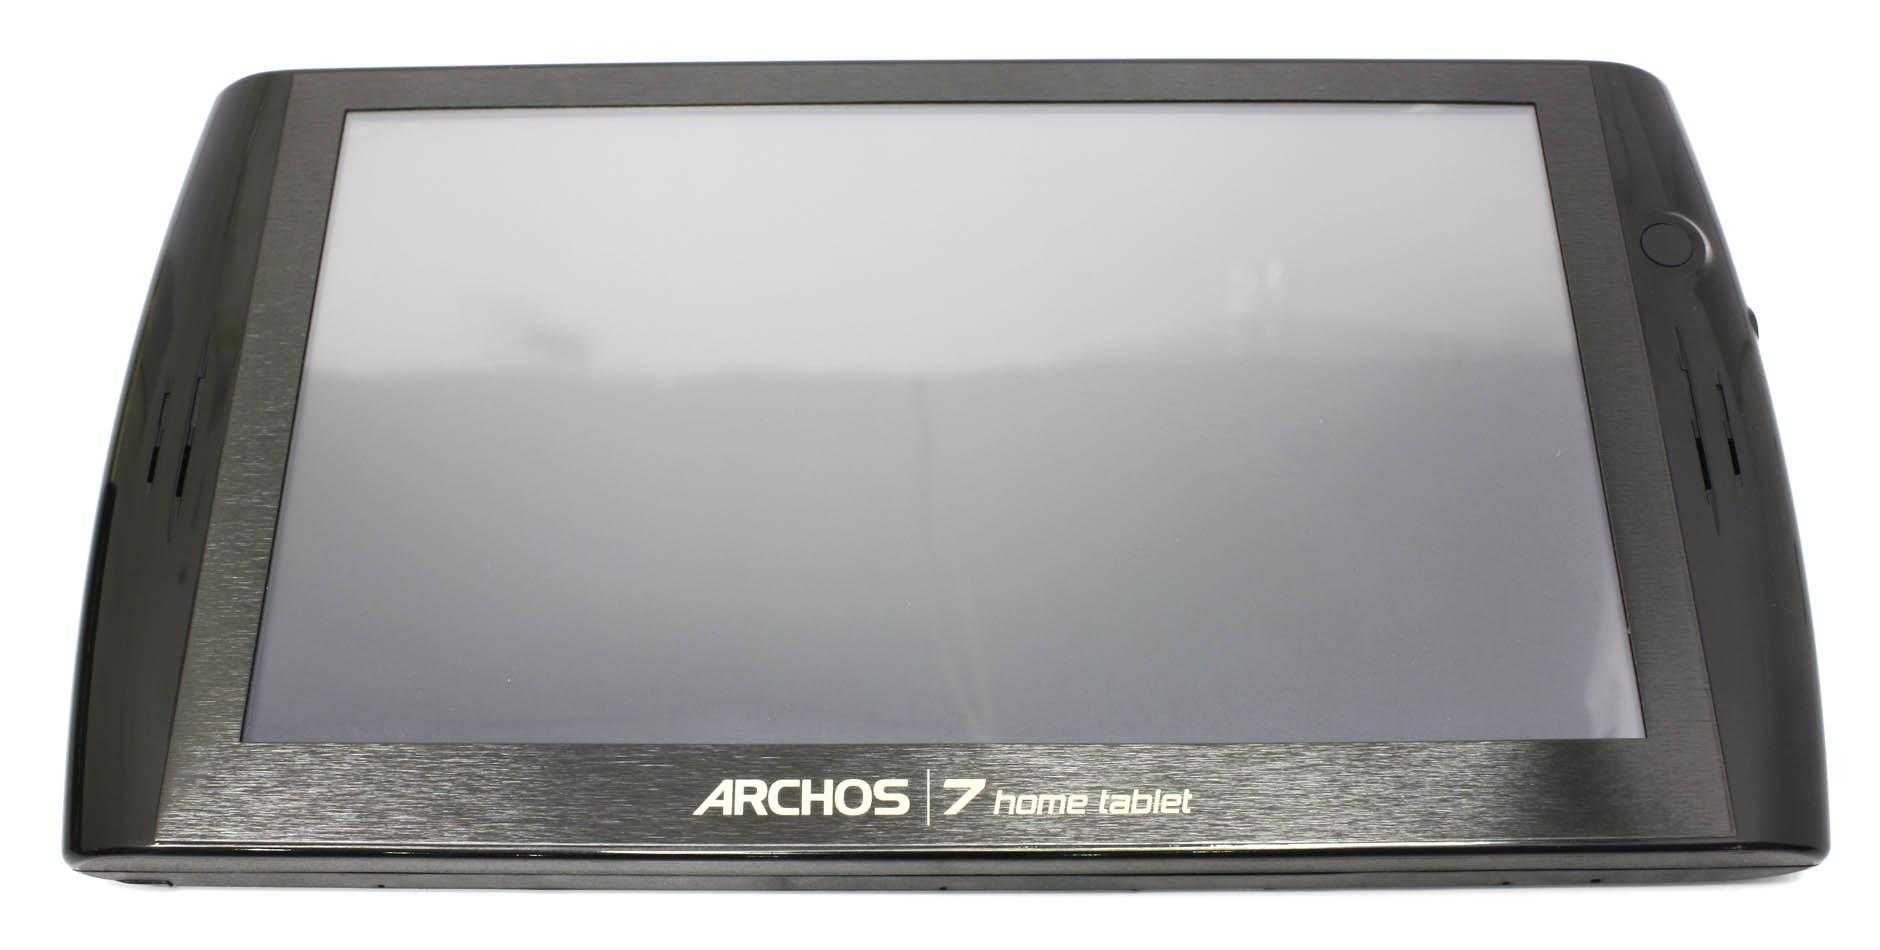 Archos arnova 7b g2 8gb - купить , скидки, цена, отзывы, обзор, характеристики - планшеты